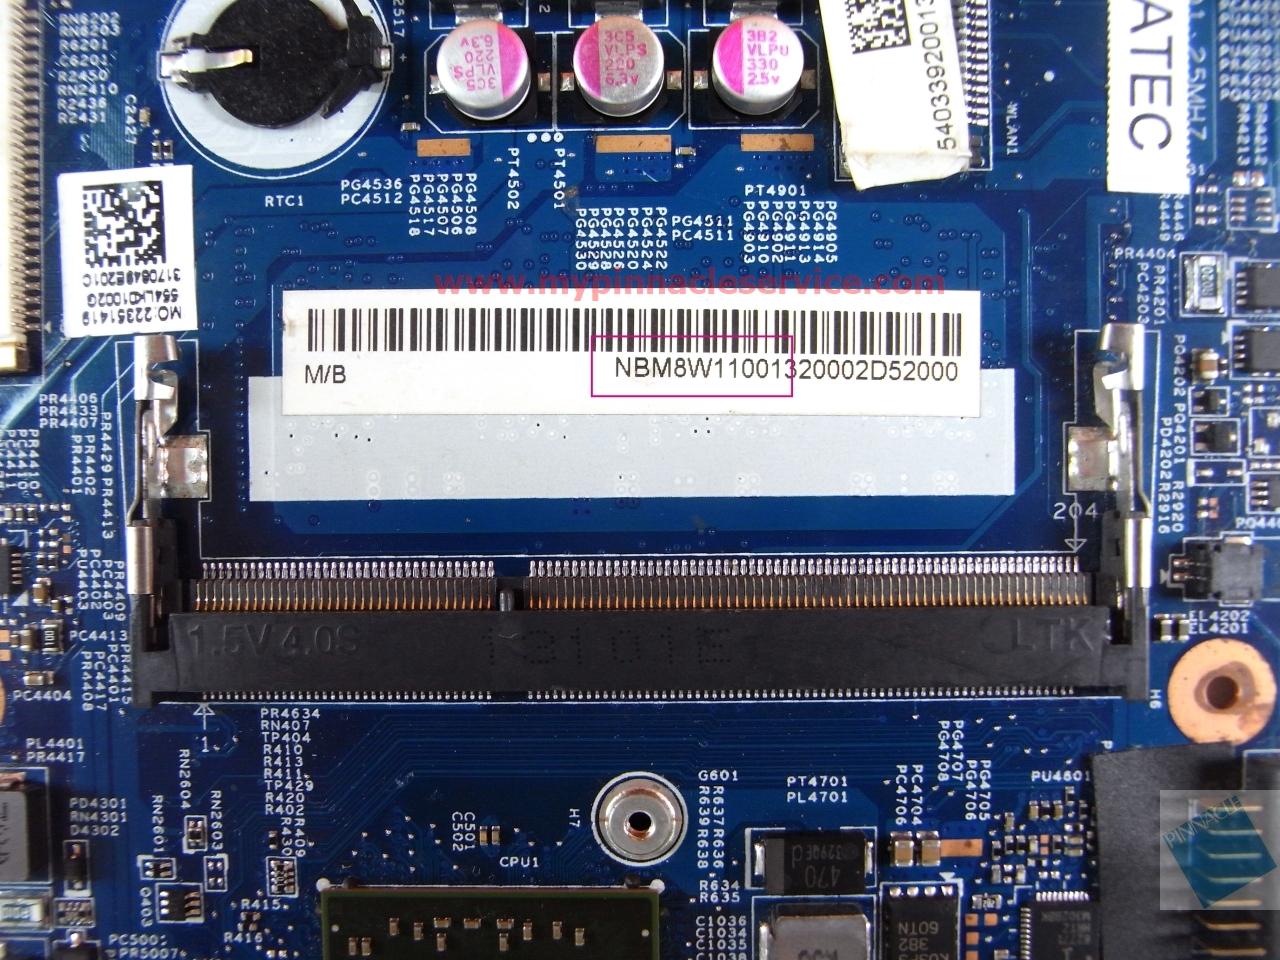 nbm8w11001-a6-1450-motherboard-for-acer-aspire-v5-122-v5-122p-48.4lk03.01-angel-tm-mb-12281-1-rimg0015.jpg